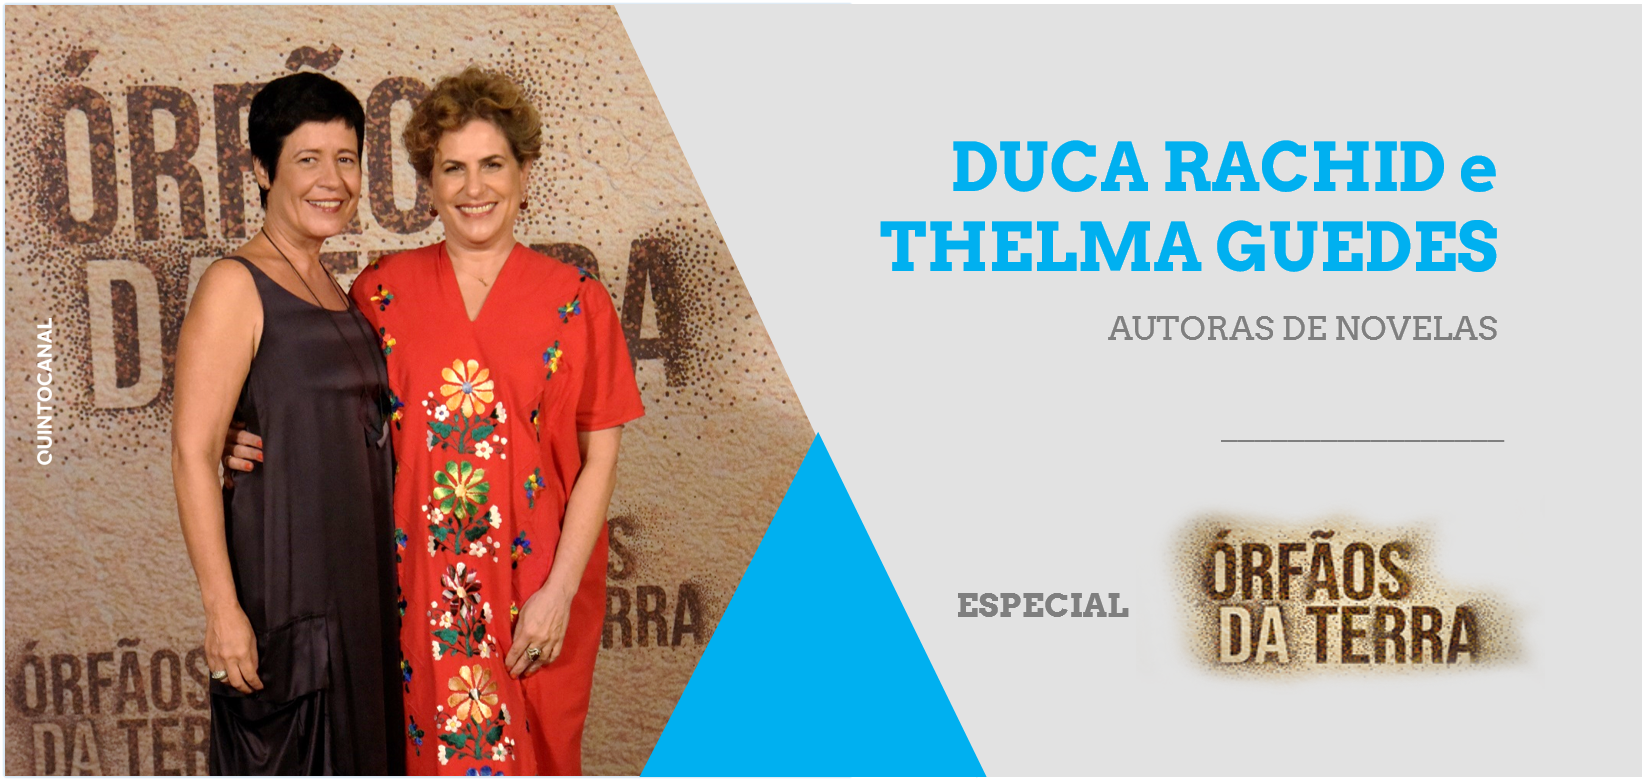  Entrevista – Especial «Órfãos da Terra»: Duca Rachid e Thelma Guedes